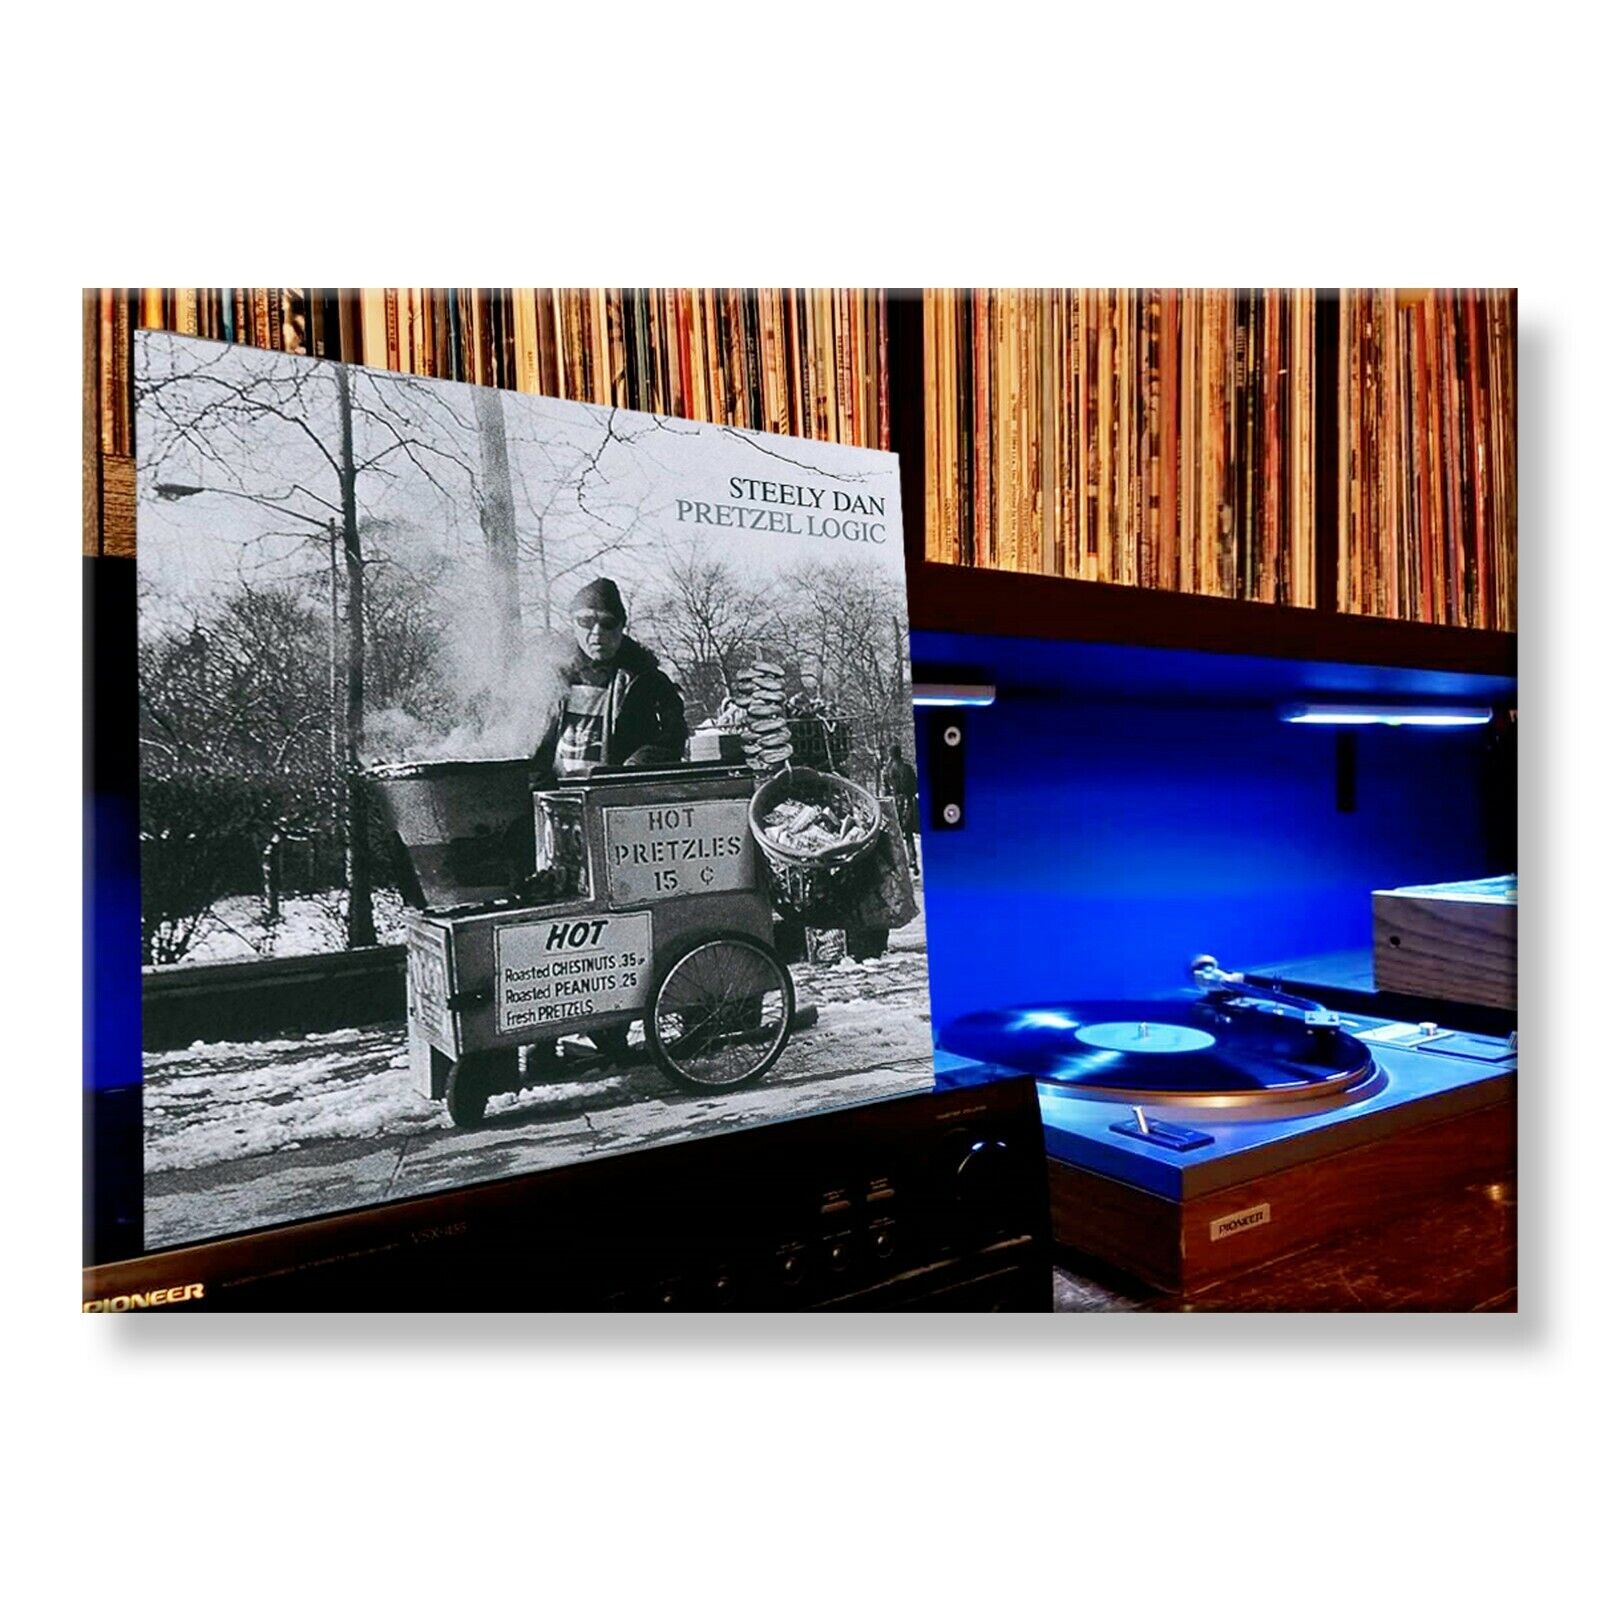 STEELY DAN Pretzel Logic Classic Album 3.5 inches x 2.5 inches FRIDGE MAGNET